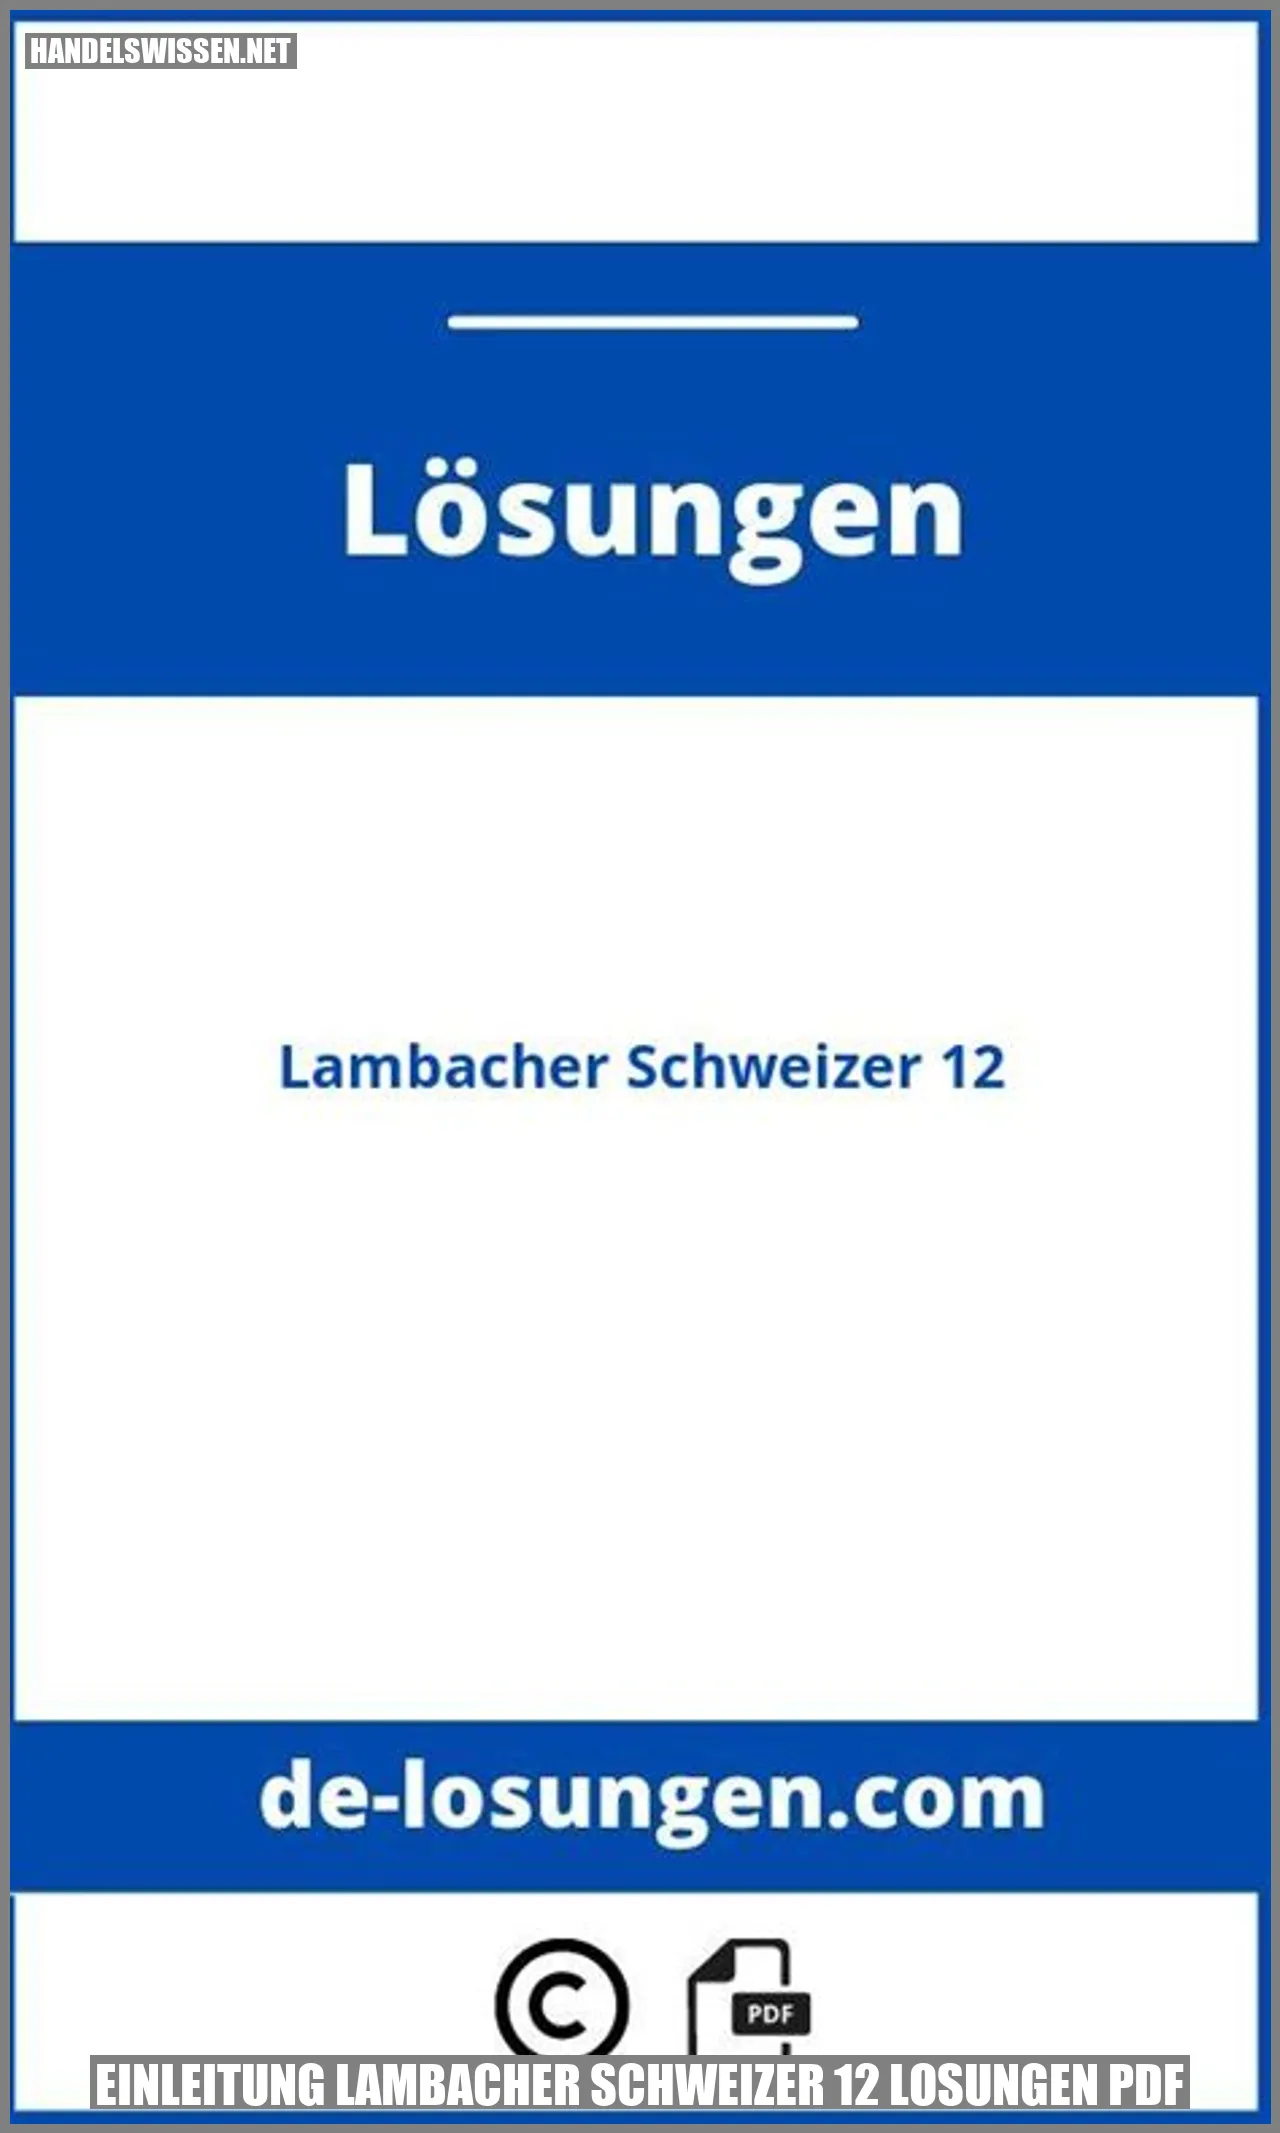 Einleitung lambacher schweizer 12 Lösungen PDF